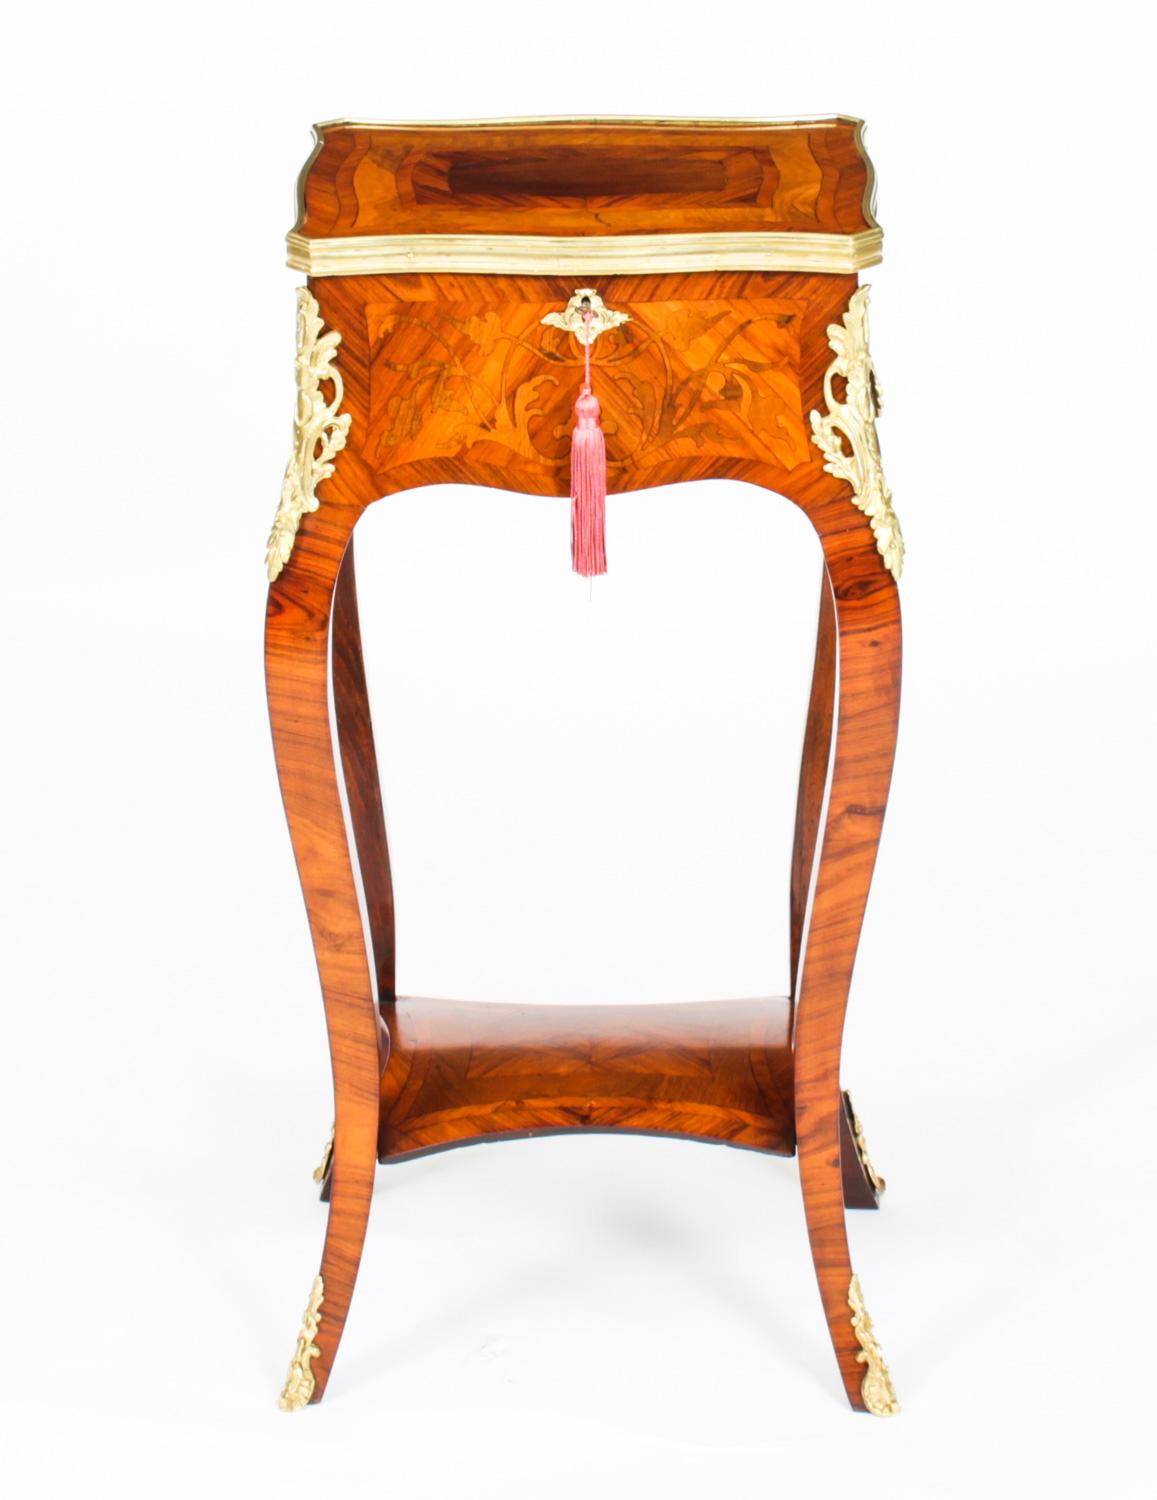 Il s'agit d'une belle table d'appoint en serpentine montée en marqueterie et ornementation de style Louis Revival, datant de 1850 environ.

Le plateau à bandeau en bronze doré est doté d'une charnière brevetée par Horne et d'une belle parqueterie à